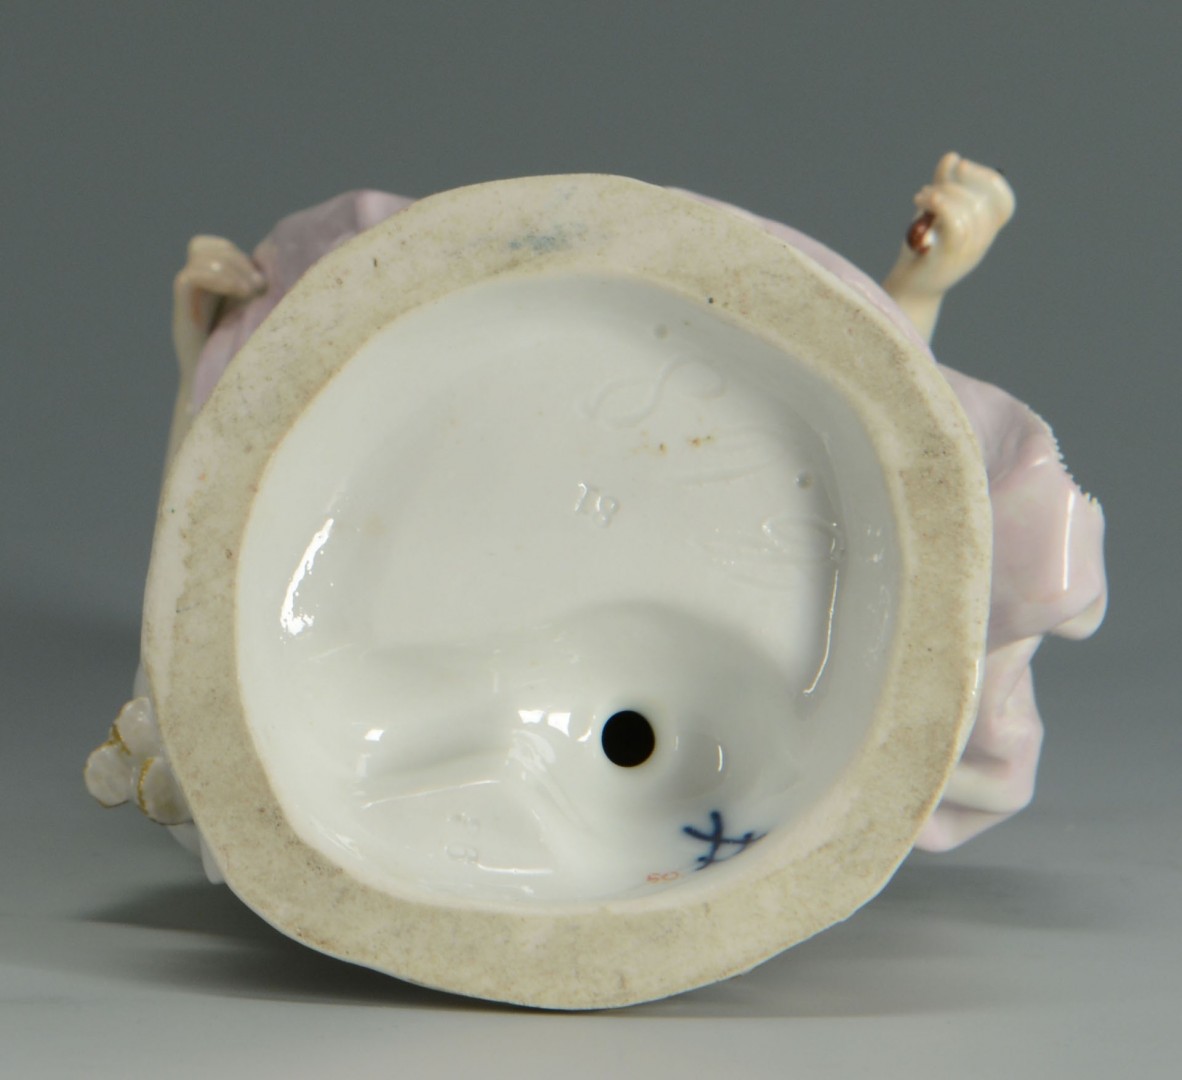 Lot 131: Meissen Porcelain Figure of a Lady w/ flowers